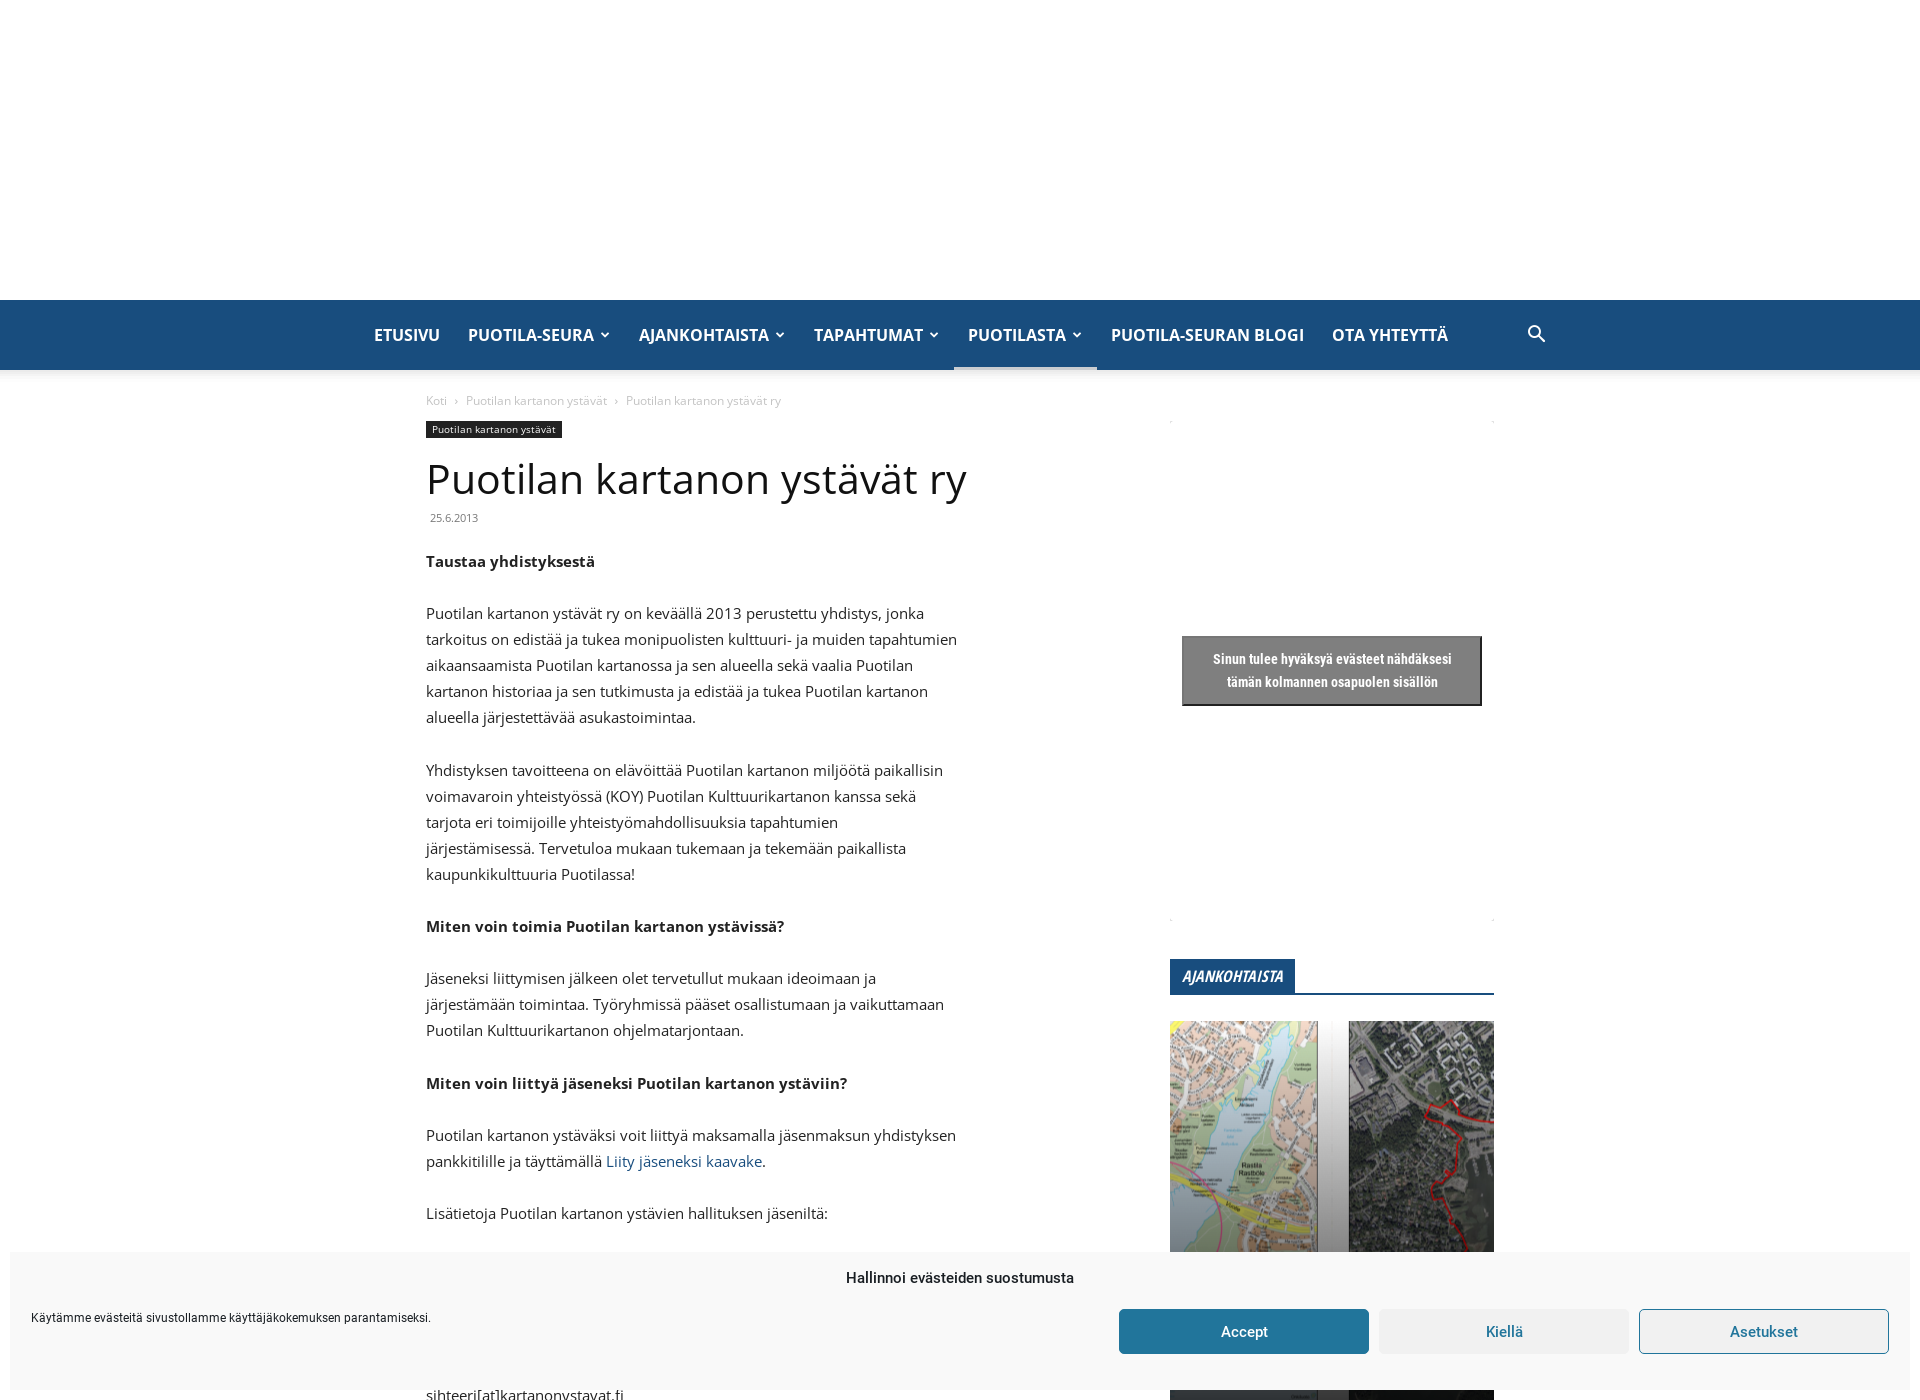 Skärmdump för kartanonystavat.fi